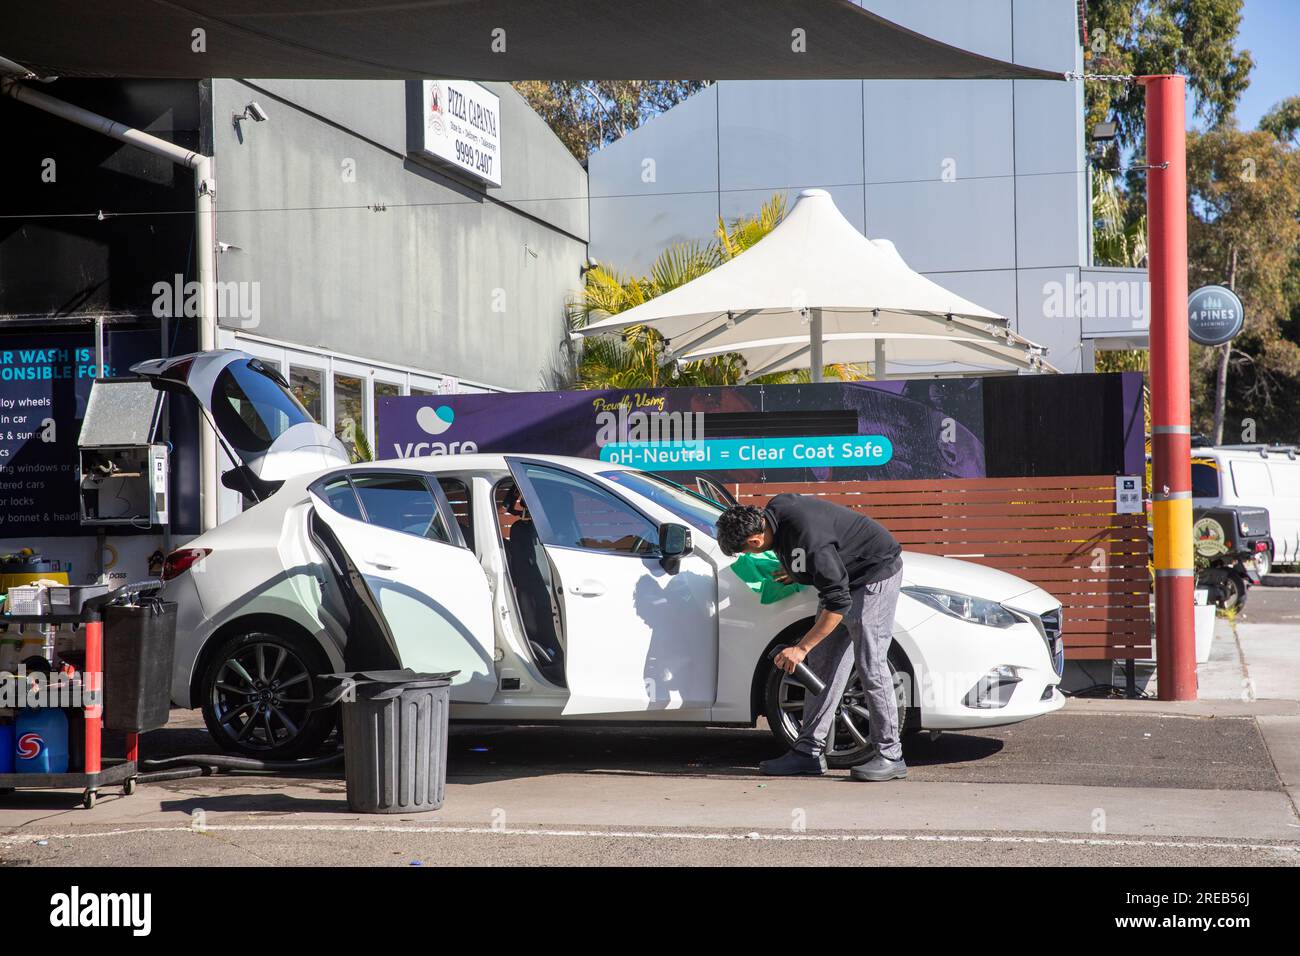 Service de lavage de voiture à la main à Sydney Australie, employé à lavage de voiture nettoie une voiture blanche avec les portes ouvertes, Australie, 2023 Banque D'Images